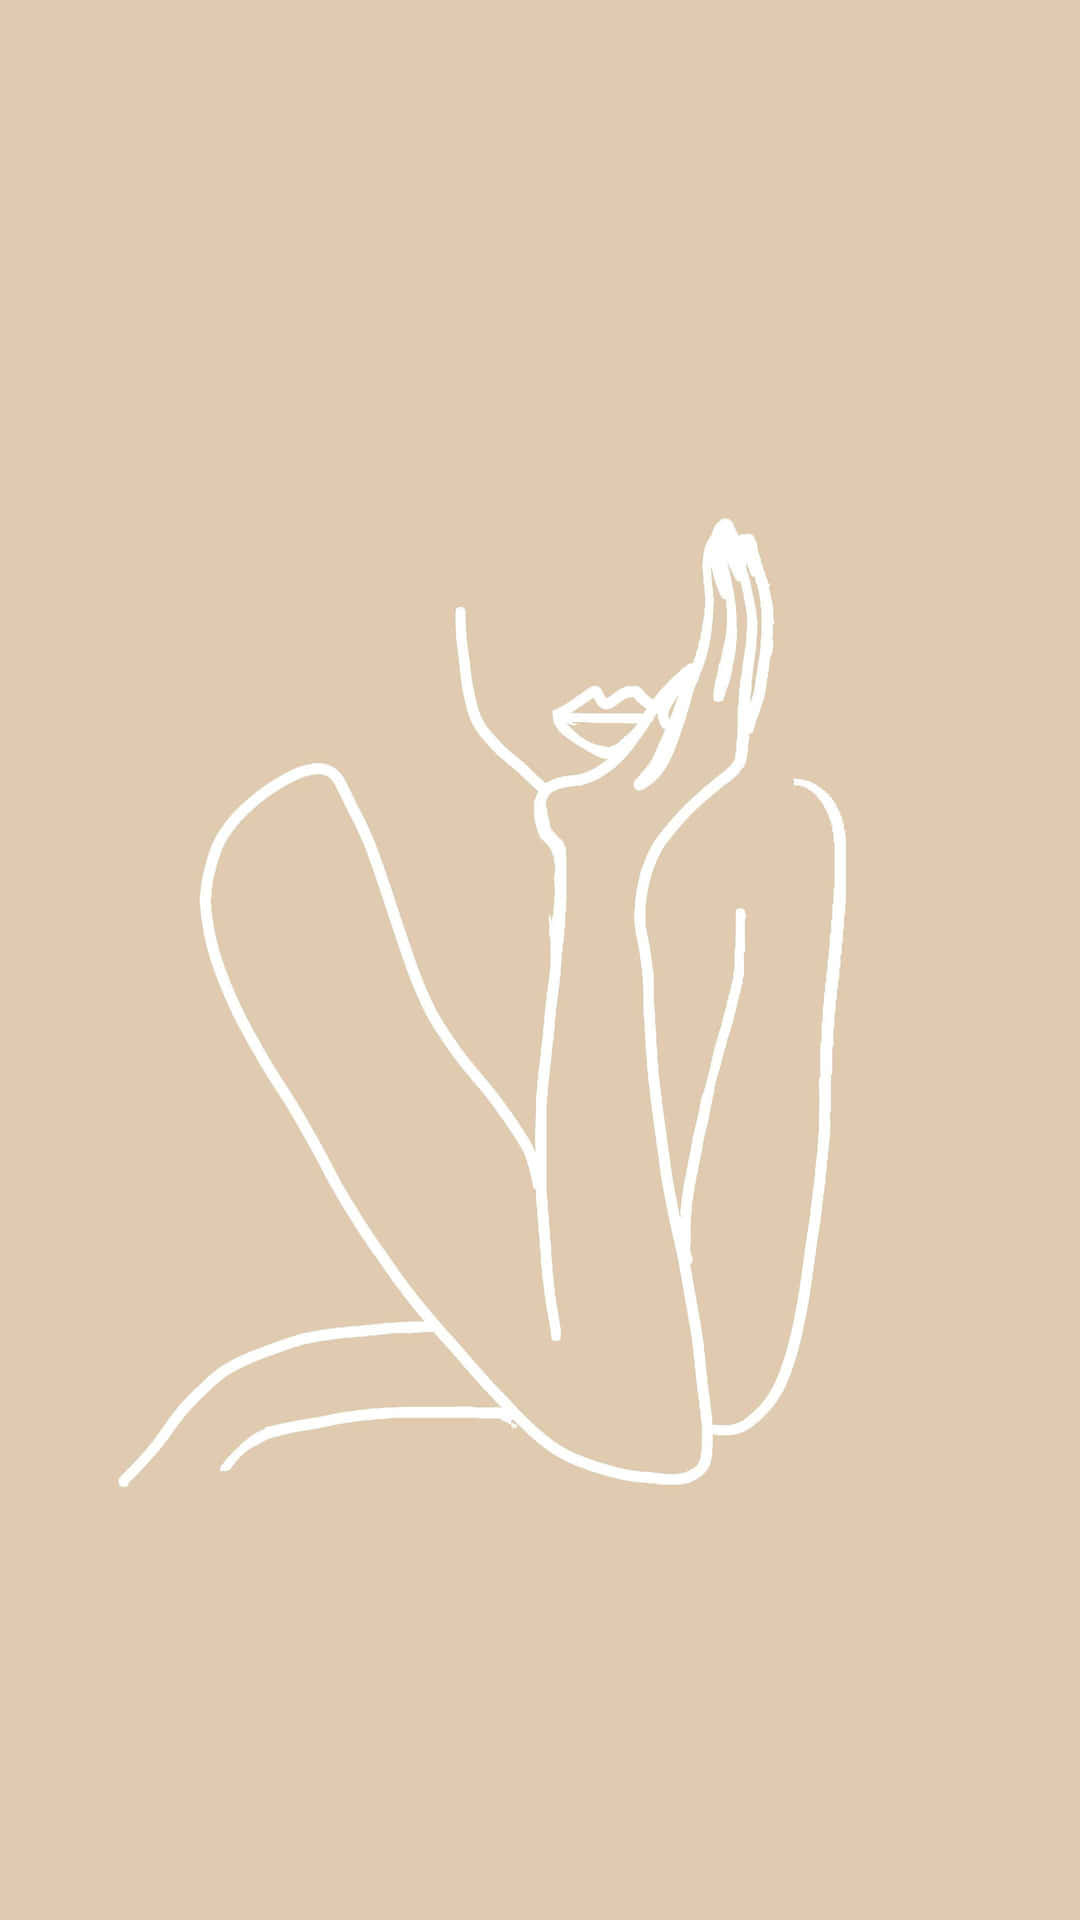 Umdesenho Em Linha De Uma Mulher Com As Mãos No Rosto.